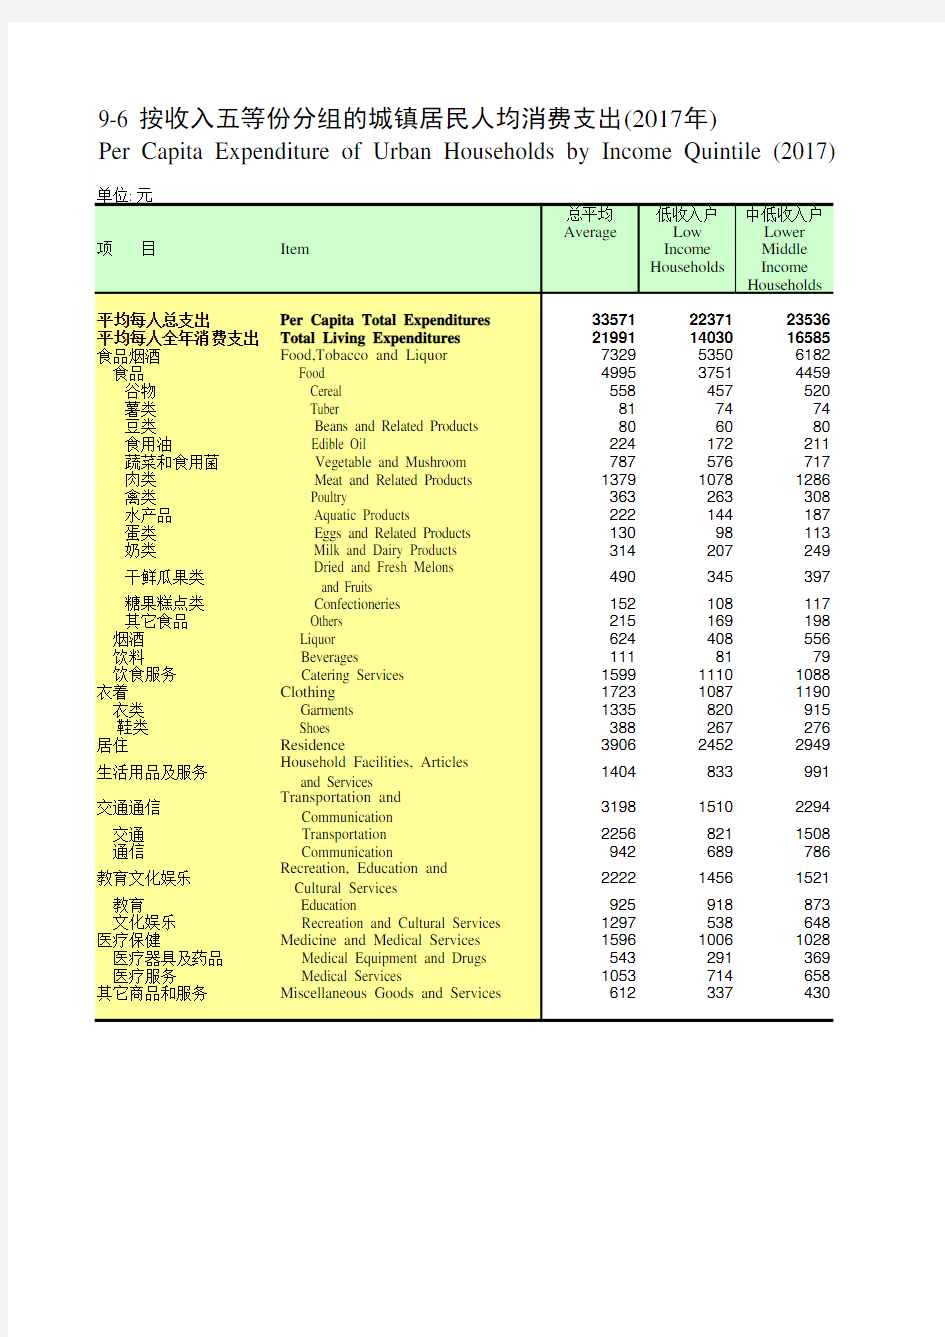 四川统计年鉴2018社会经济发展指标：按收入五等份分组的城镇居民人均消费支出(2017年)